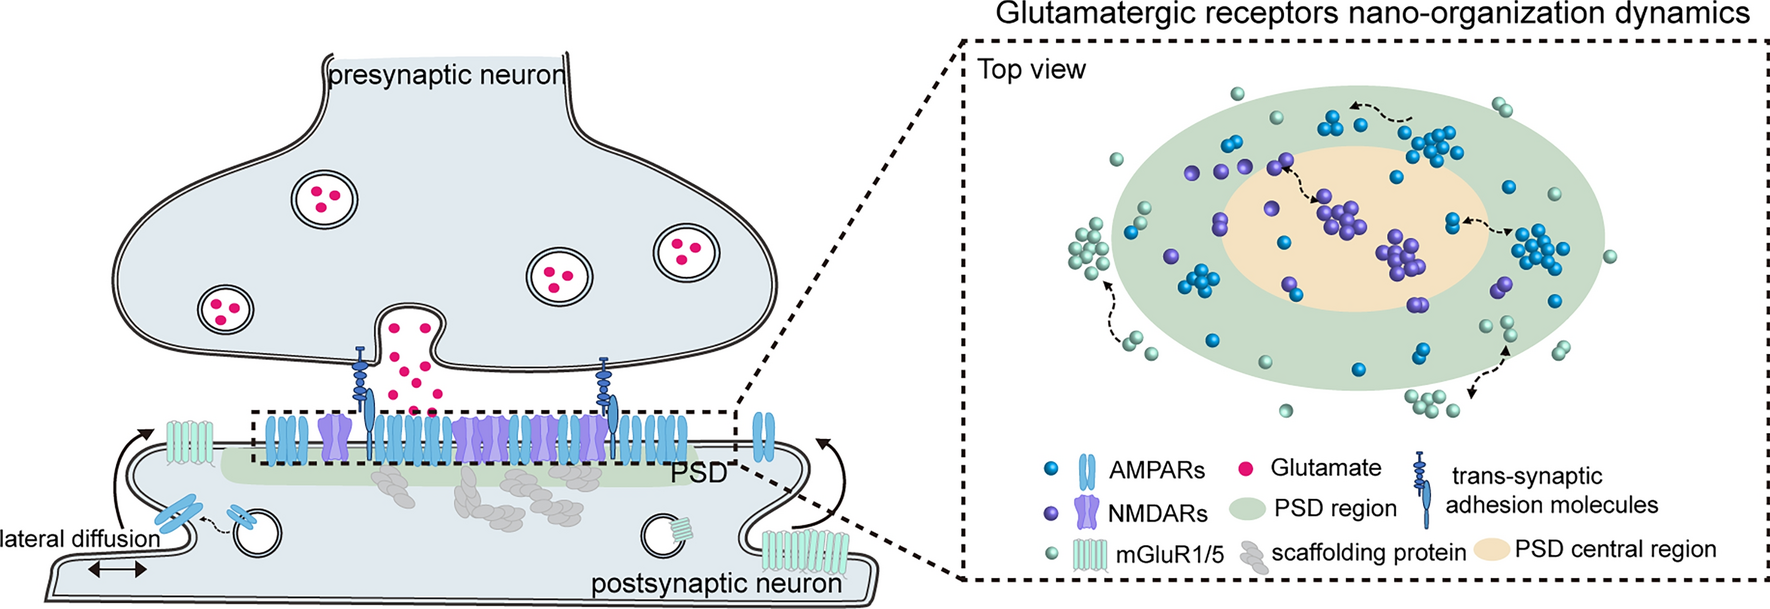 Nanoscale Reorganization of Glutamate Receptors Underlies Synaptic Plasticity and Pathology